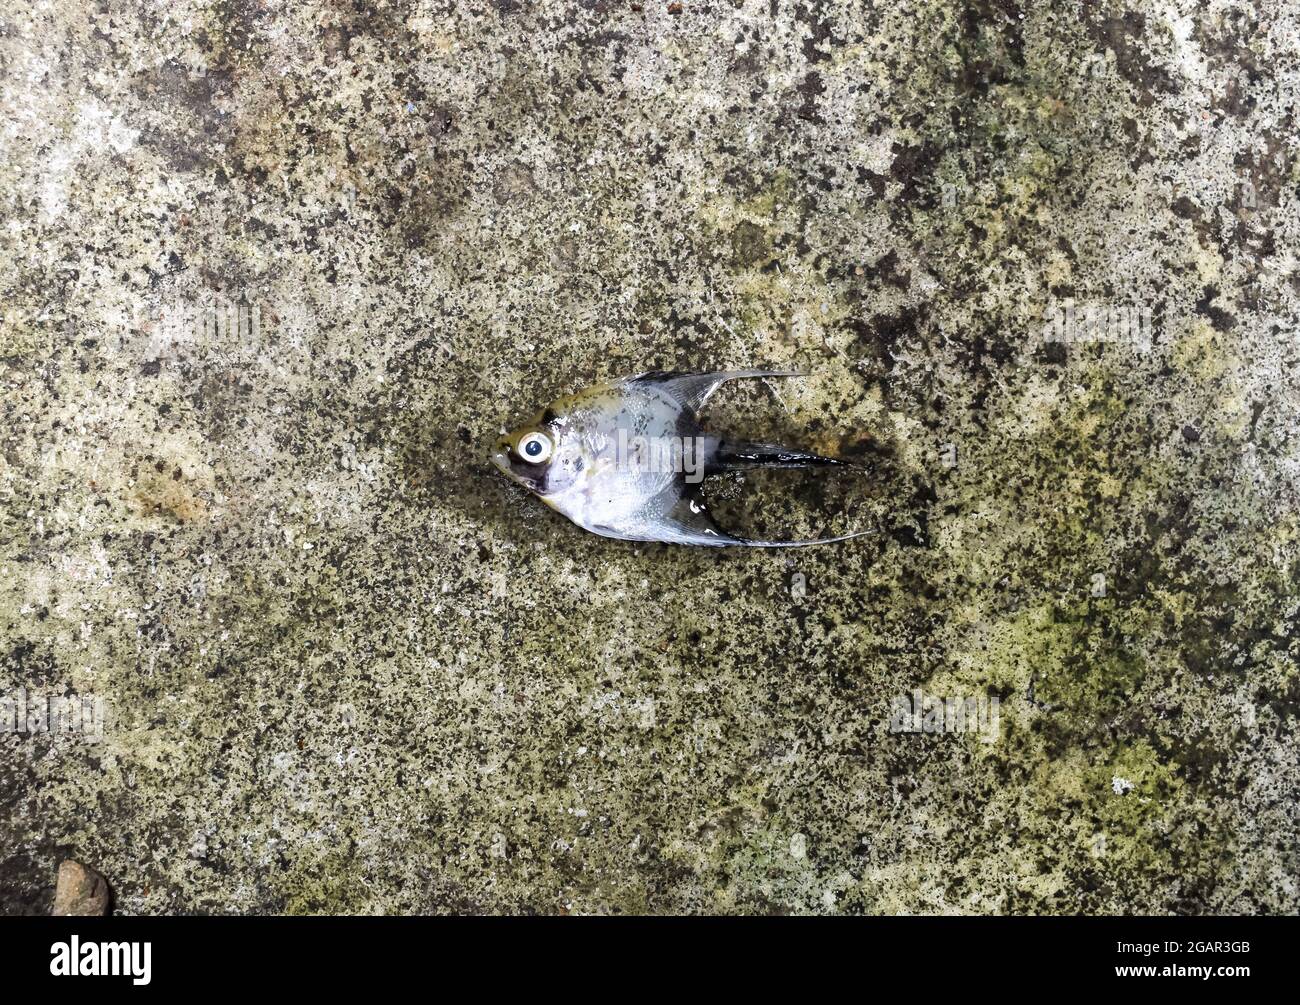 El pez ángel de mármol dorado murió debido al choque de agua. Peces pequeños muertos en el suelo. Foto de stock